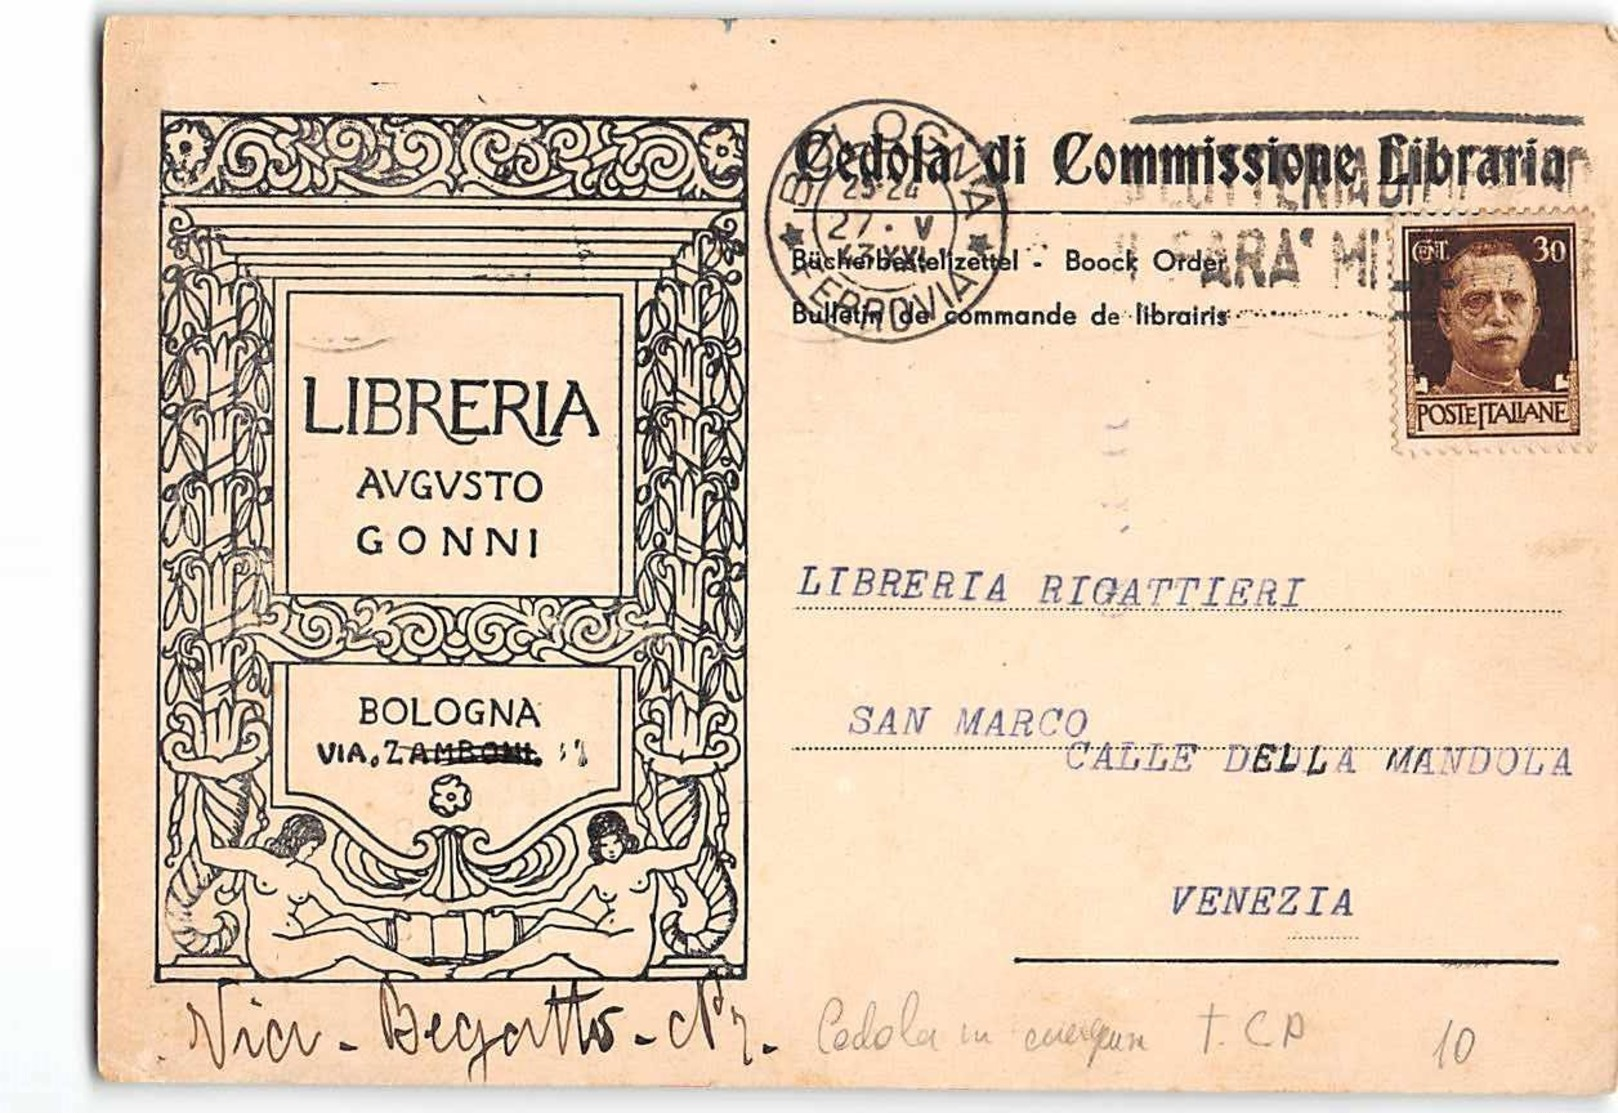 15748 01 CEDOLA COMMISSIONE LIBRARIA LIBRERIA AUGUSTO GONNI BOLOGNA X VENEZIA - Interi Postali